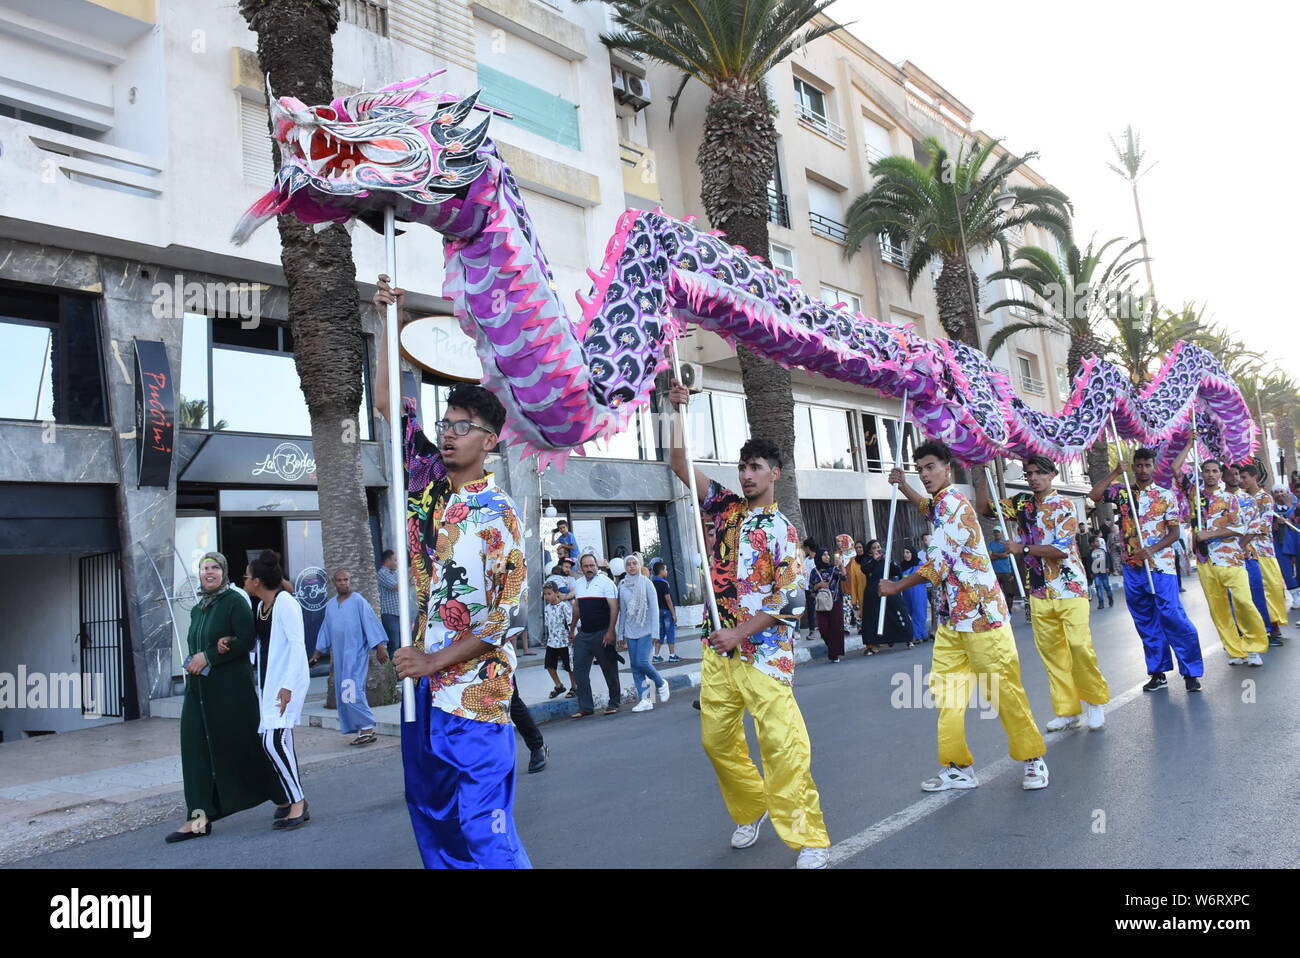 (190802) -- EL Jadida (Marocco), 2 agosto 2019 (Xinhua) -- I partecipanti eseguono dragon dance durante la parata di apertura del 2019 Jawhara Festival in El Jadida, Marocco, il 2 agosto 2019. Jawhara Festival è una coltura annuale evento in Marocco, con la partecipazione di artisti e musicisti provenienti da diversi paesi. (Foto di Chadi/Xinhua) Foto Stock